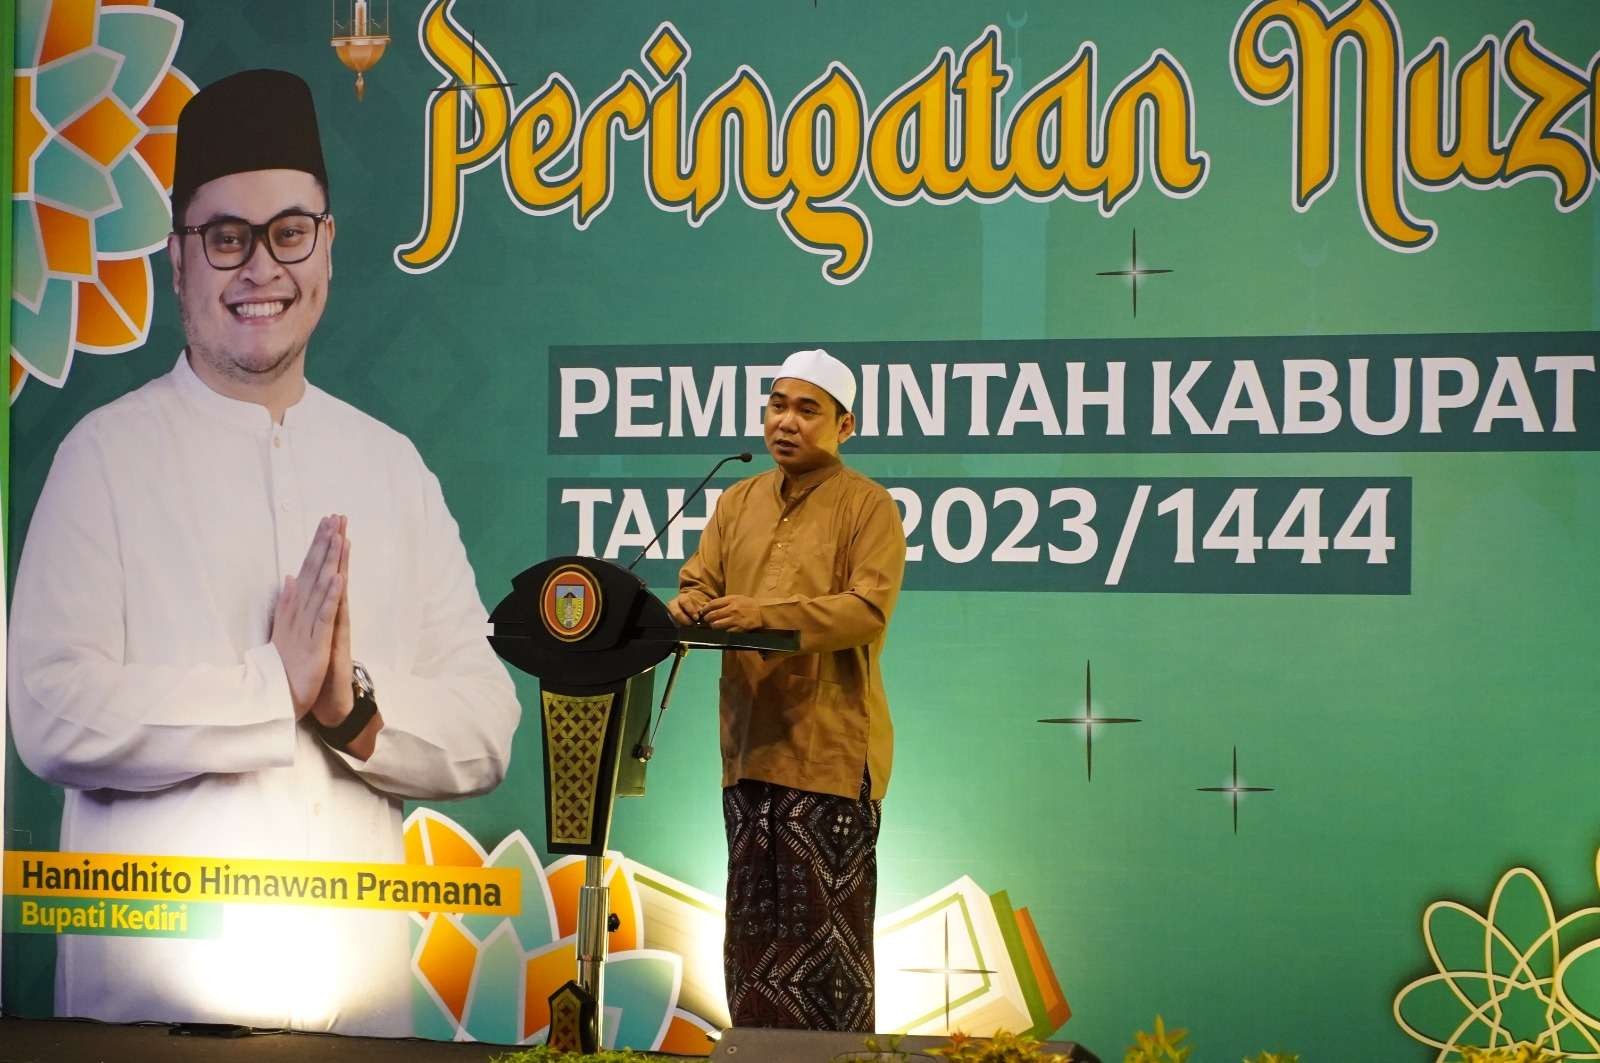 Pemerintah Kabupaten Kediri menggelar acara Nuzulul Qur’an yang bertempat di Convention Hall Simpang Lima Gumul. (Foto: Kominfo Kabupaten Kediri)